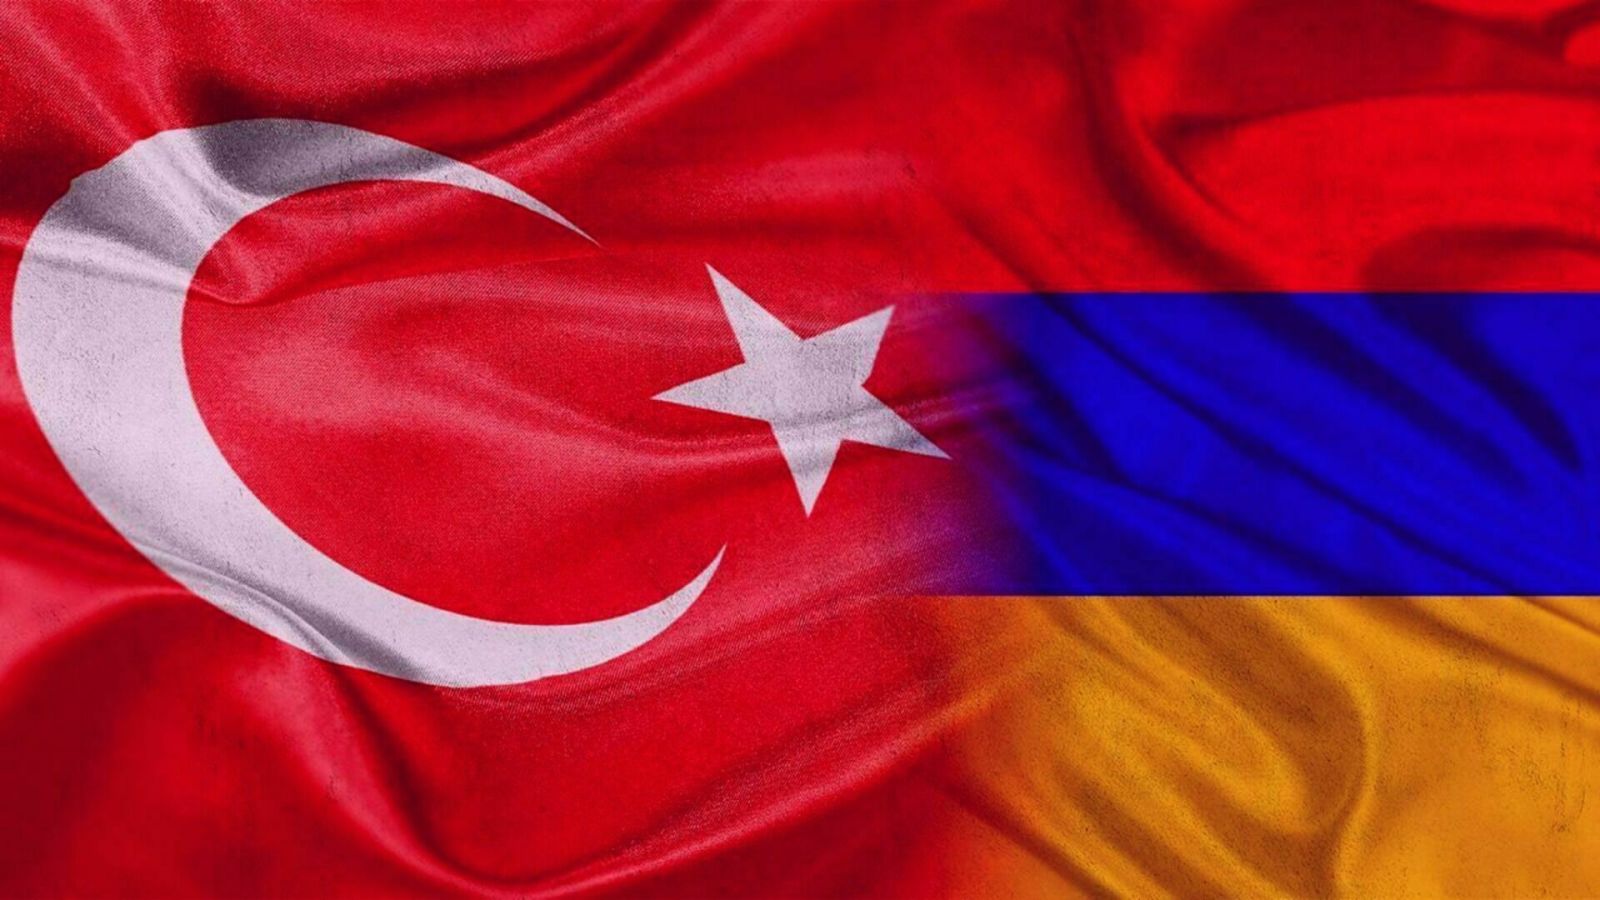 Ermənistan Türkiyə ilə sərhədinin açılmasına hazırdır: Bəs Türkiyə? - AÇIQLAMA